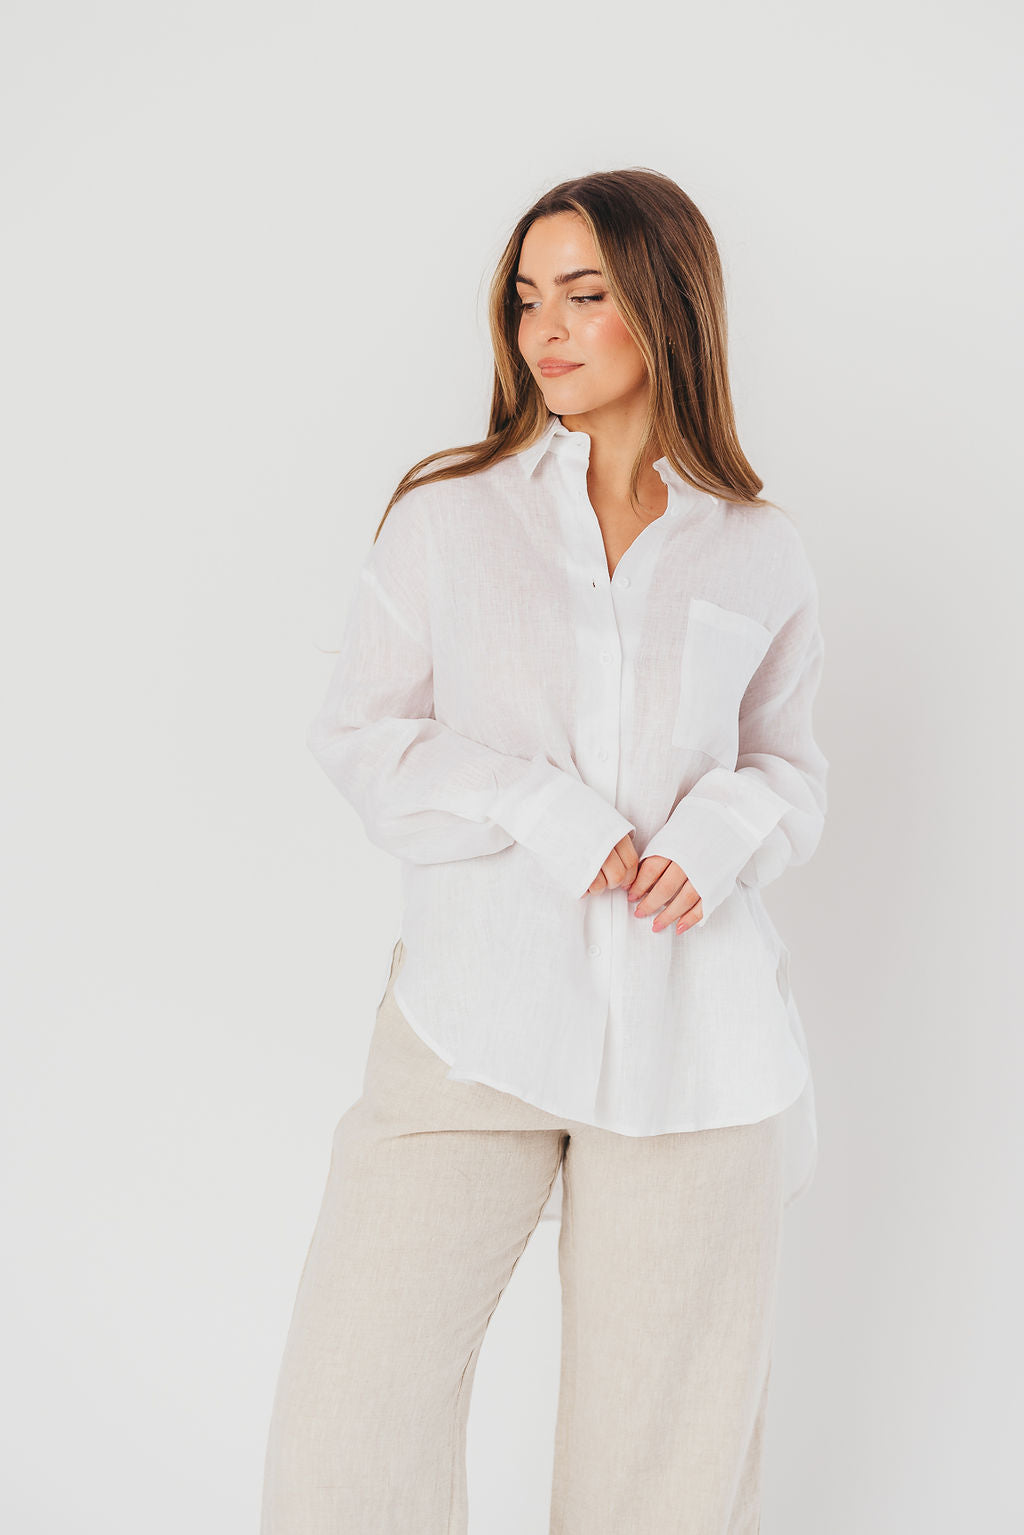 Helen 100% Linen Shirt in White - Nursing Friendly